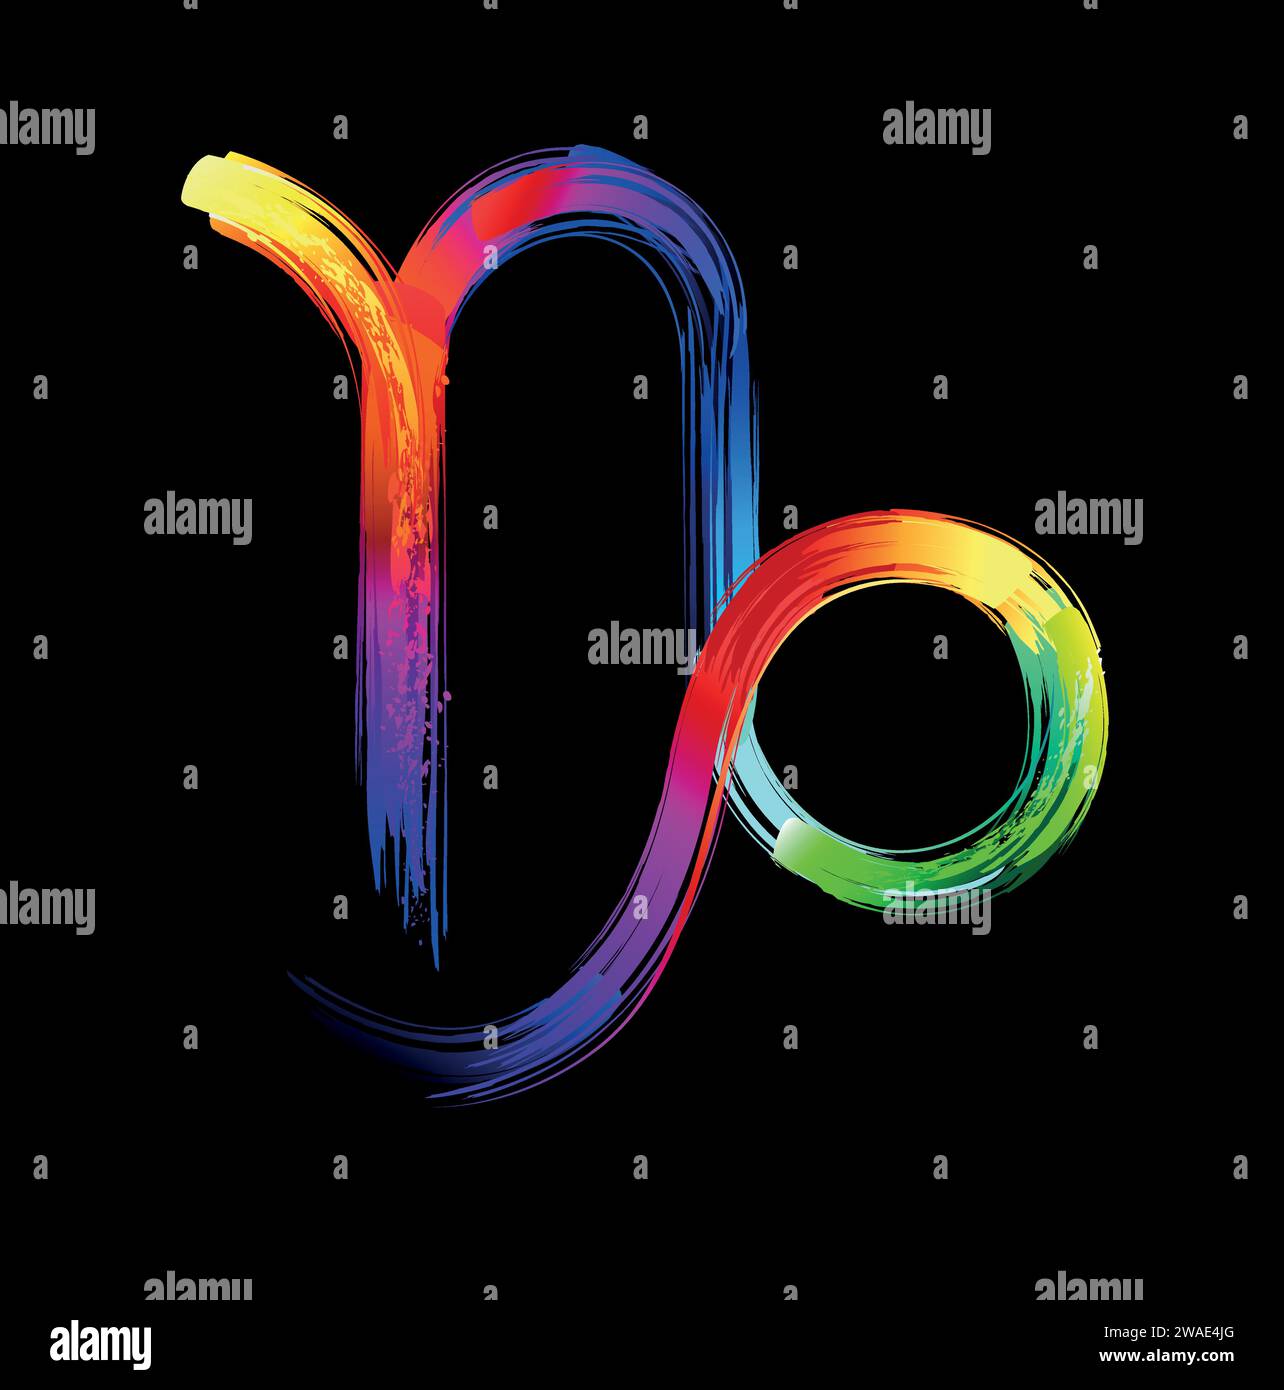 Sternzeichen Steinbock, gemalt mit großen Regenbogenstrichen, hell, mehrfarbig, leuchtend, Neonfarbe auf schwarzem Hintergrund. Zodiac-Symbol. Stock Vektor